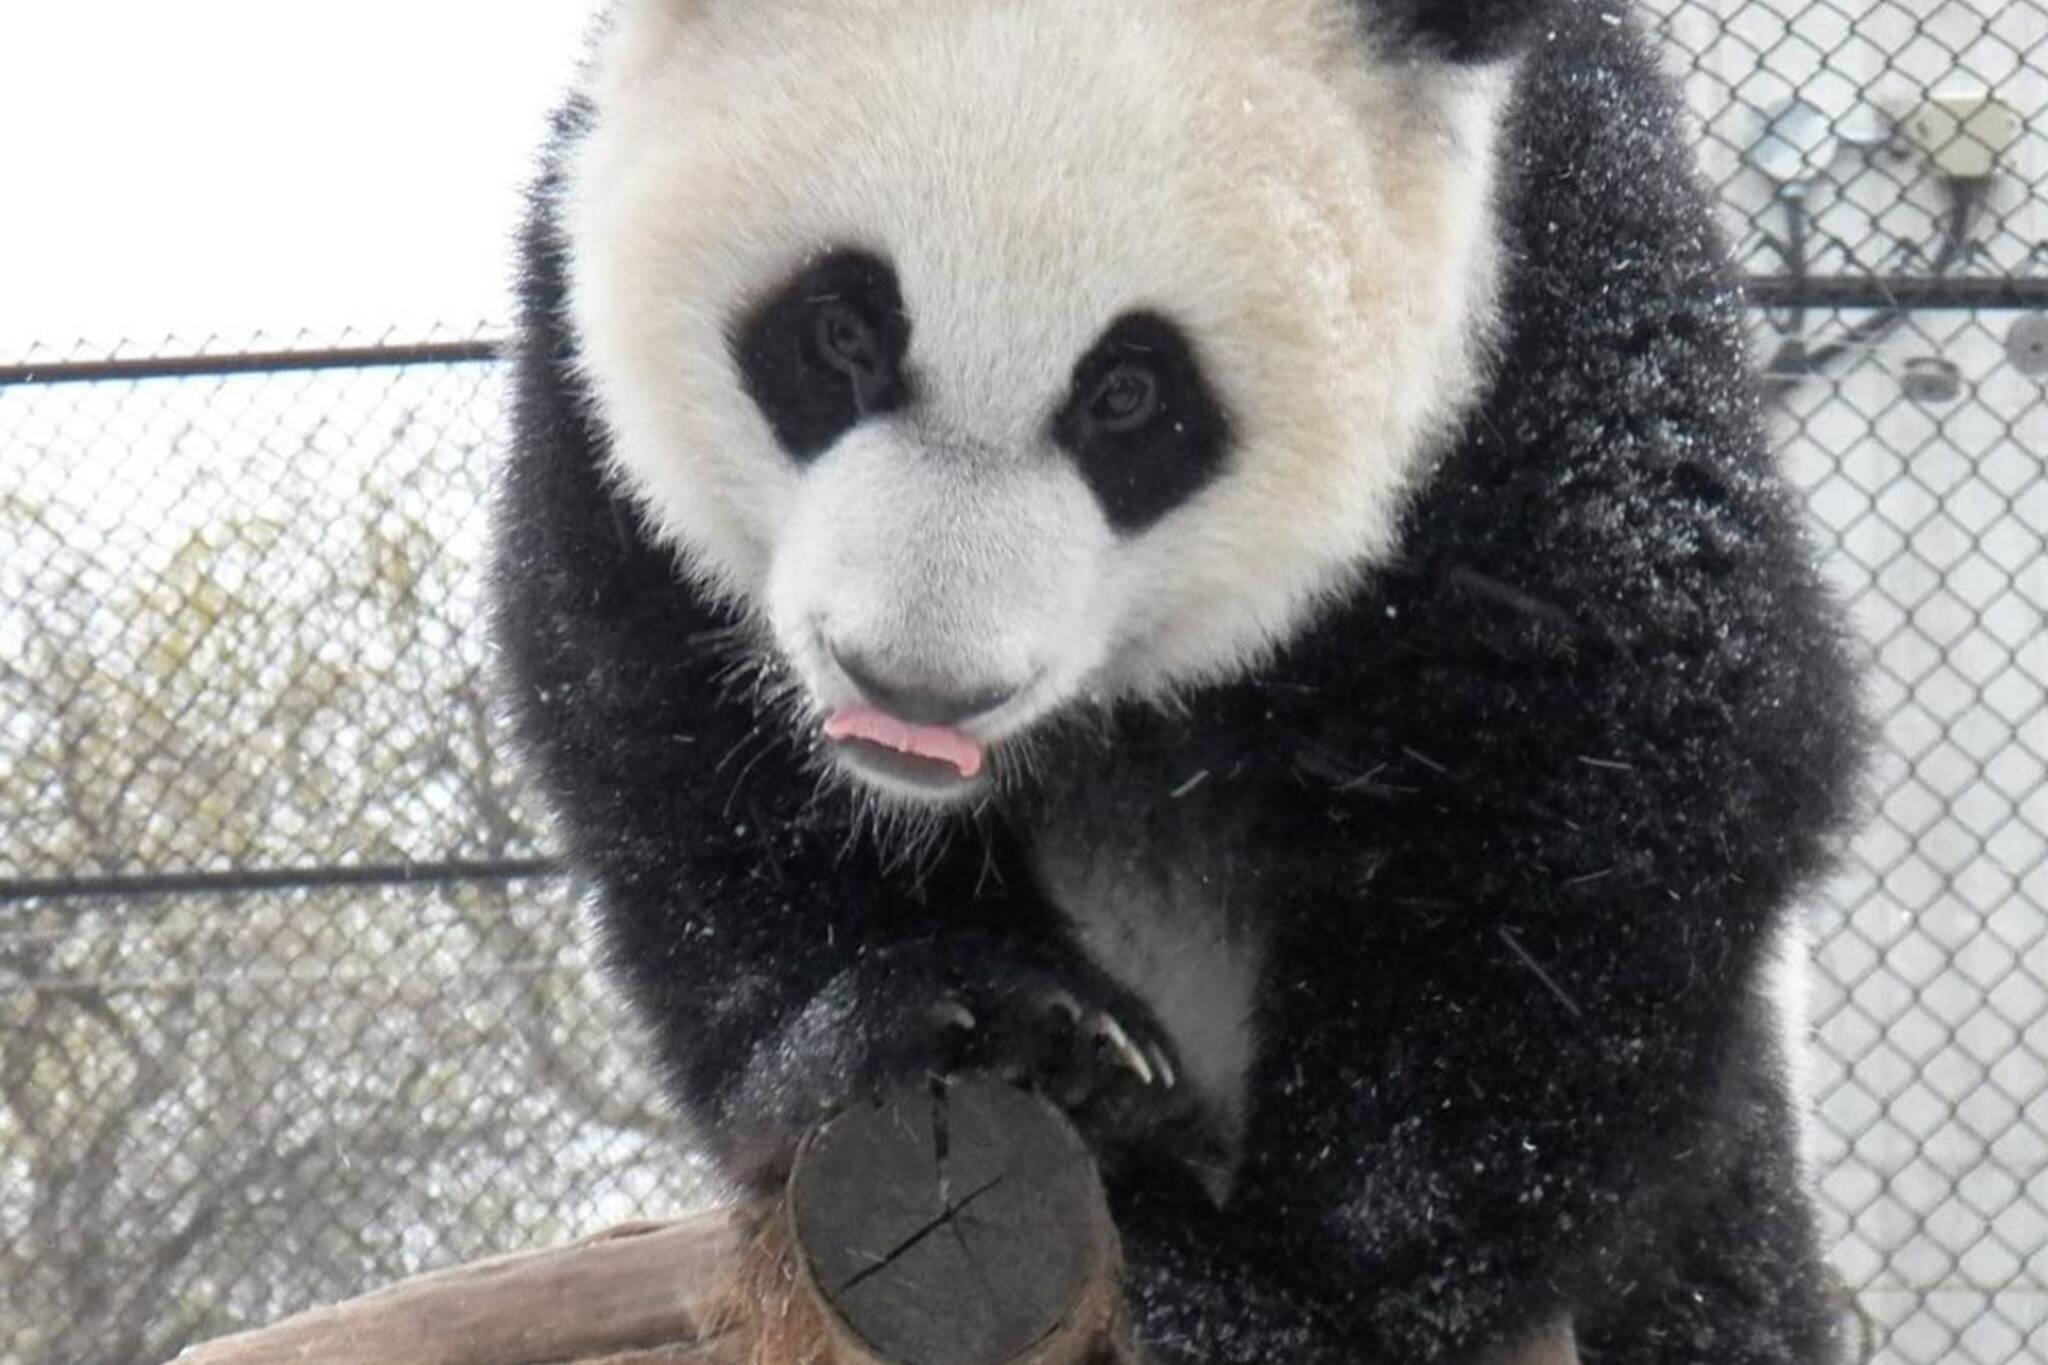 toronto panda snow